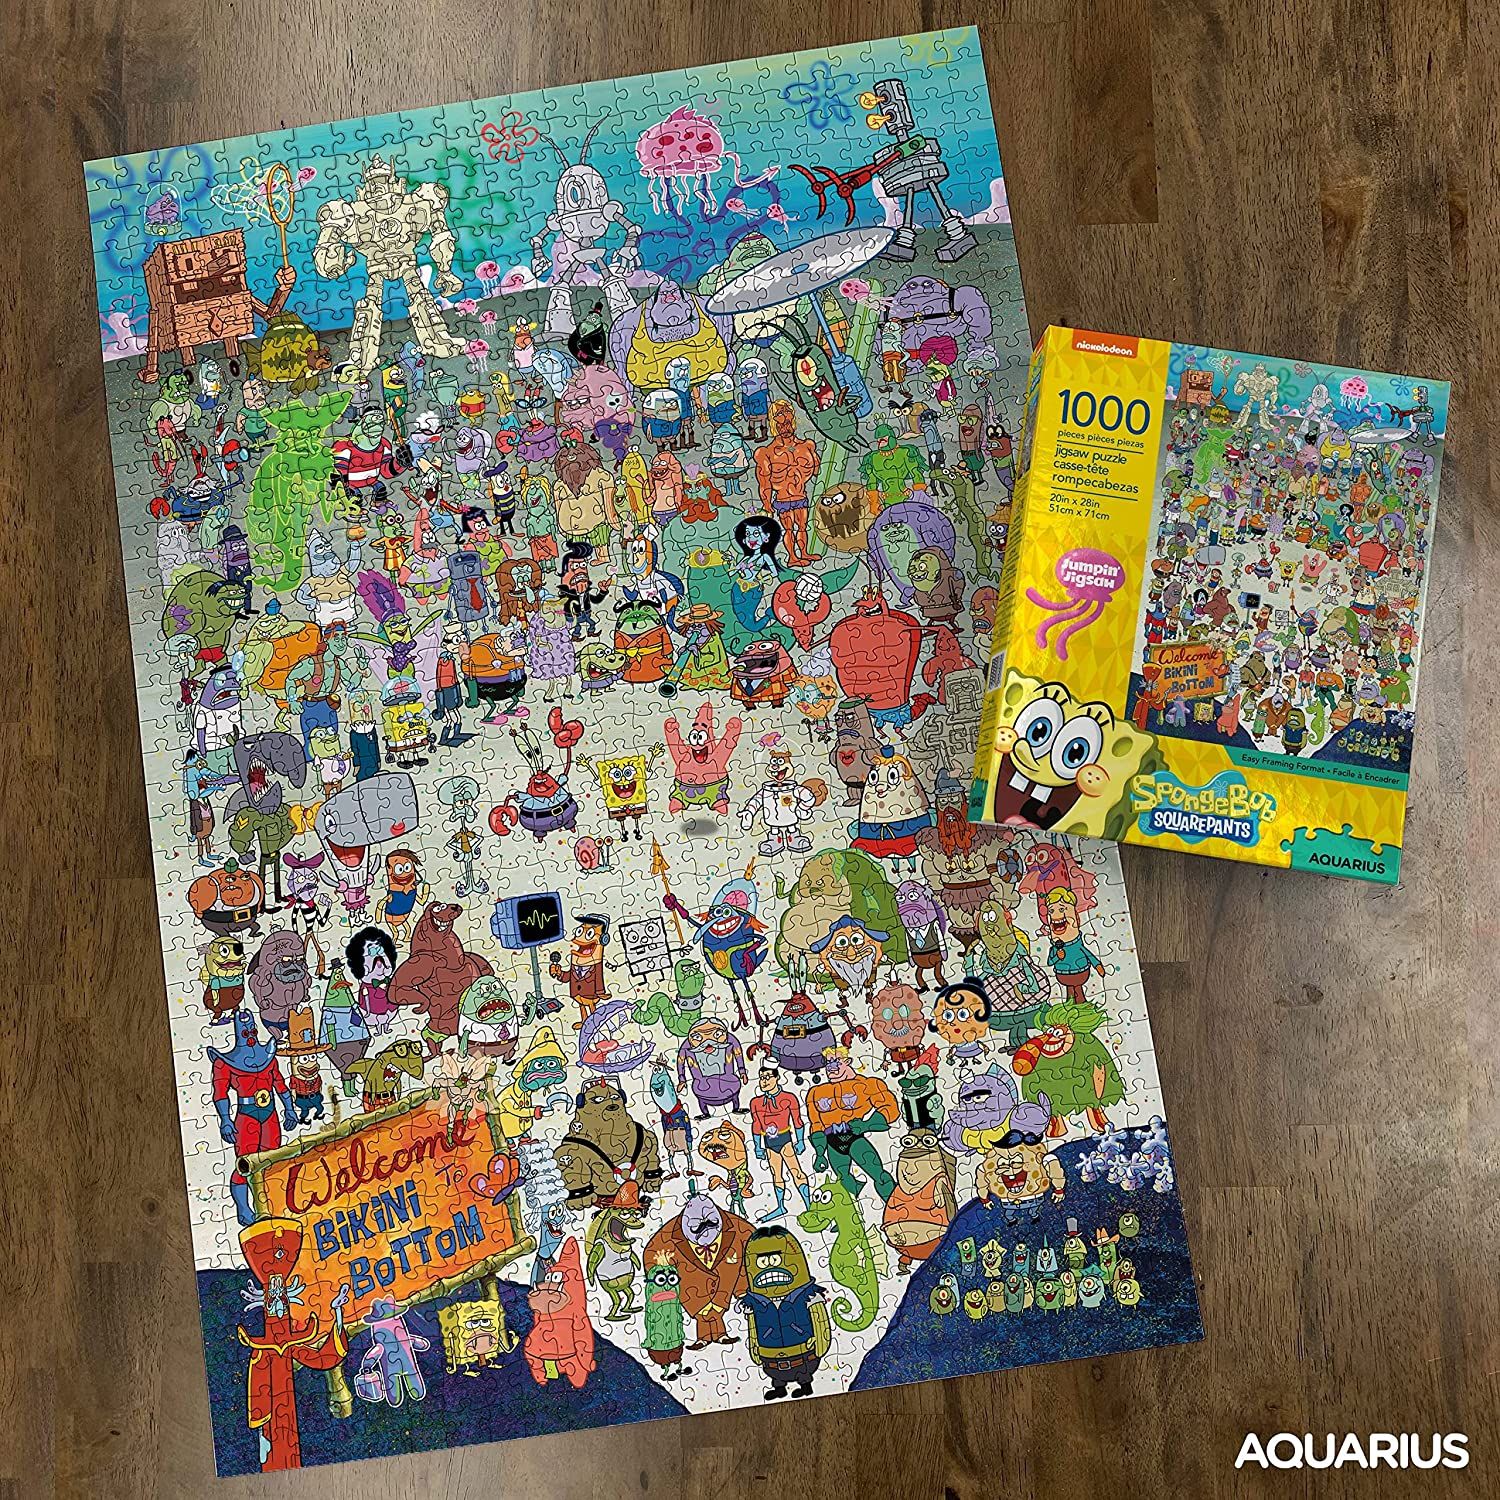 AQUARIUS SpongeBob SquarePants Puzzle (1000 Piece Jigsaw Puzzle) 2